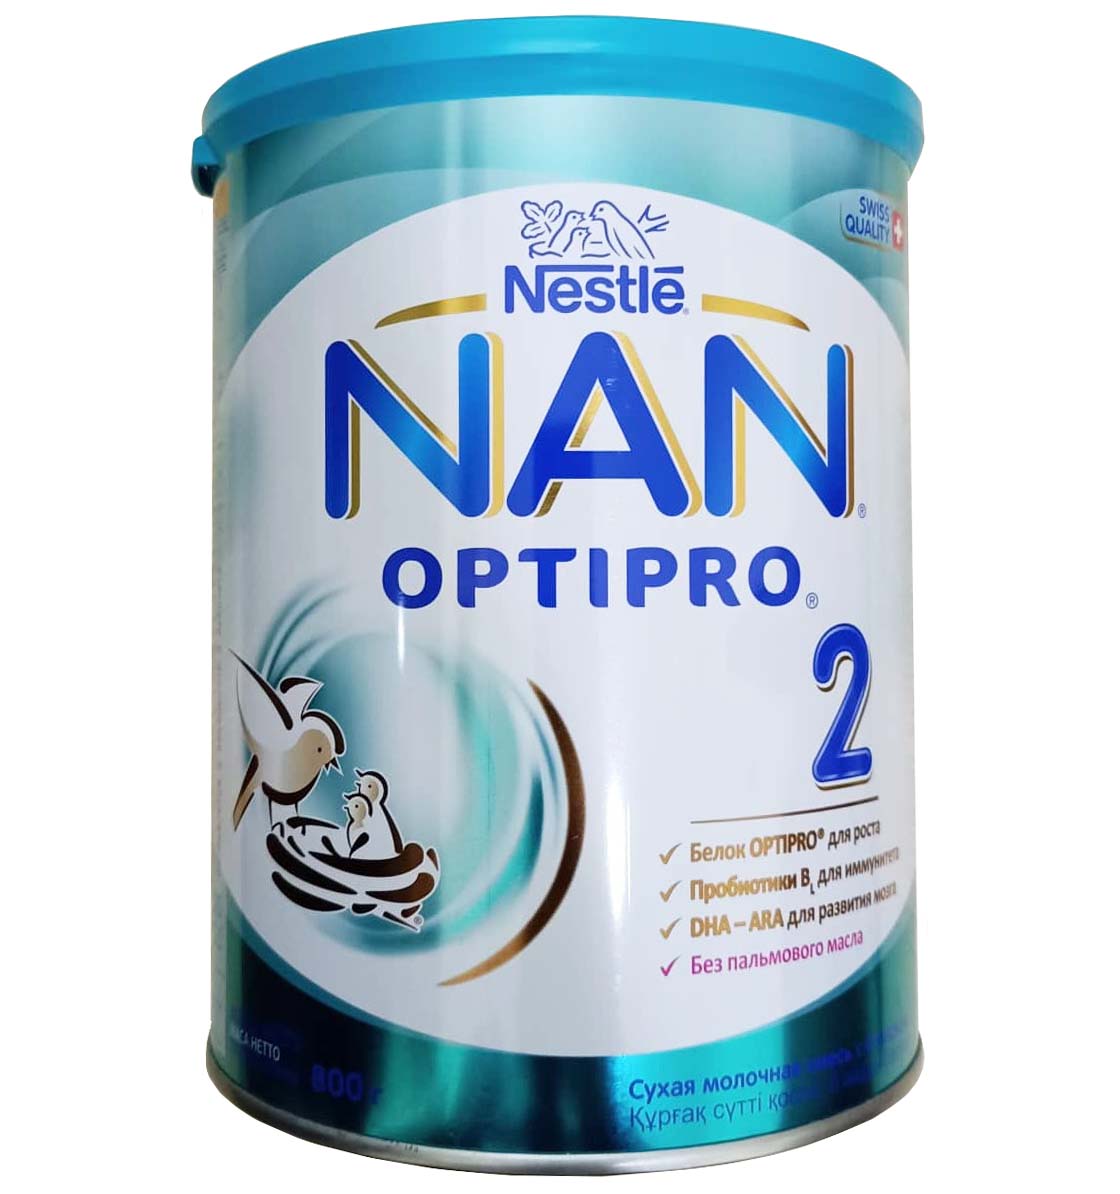 Sữa Nan Nga Optipro số 2 cho bé 6 - 12 tháng tuổi 800g sua nan nga so 2 jpg 1580355361 30012020103601